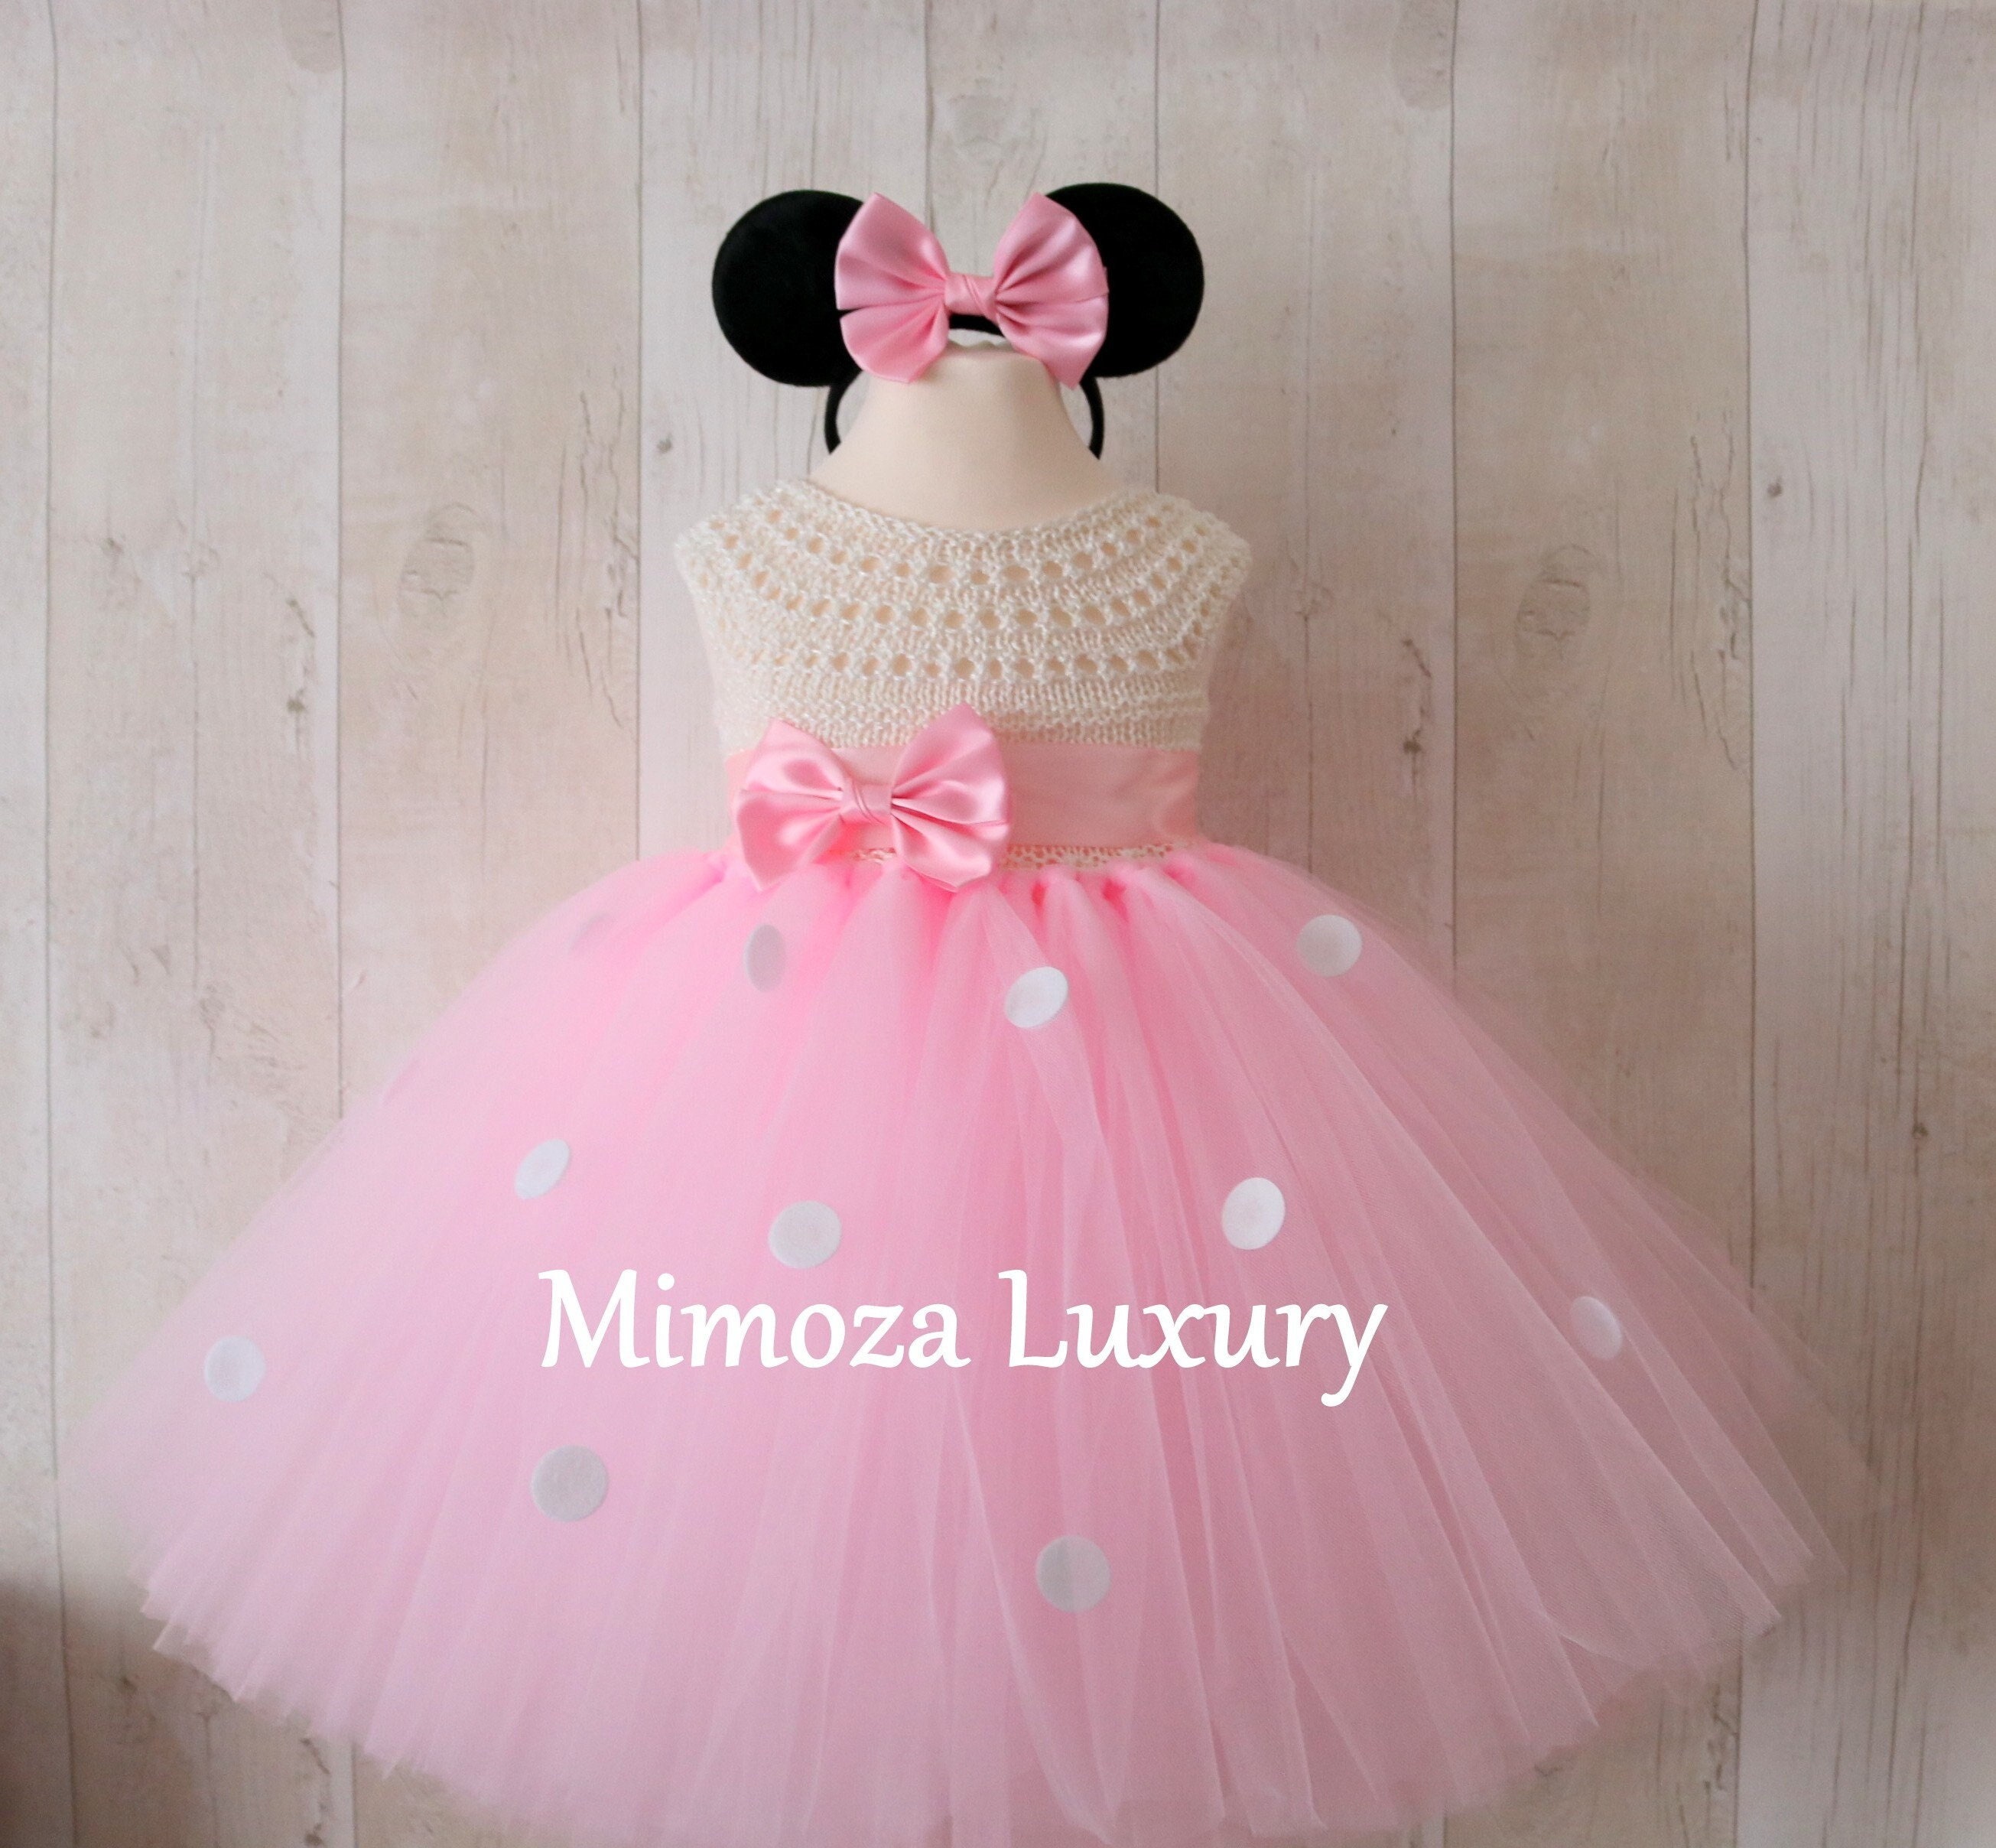 Minnie souris avec robe rose. enfants : image vectorielle de stock (libre  de droits) 2314946169